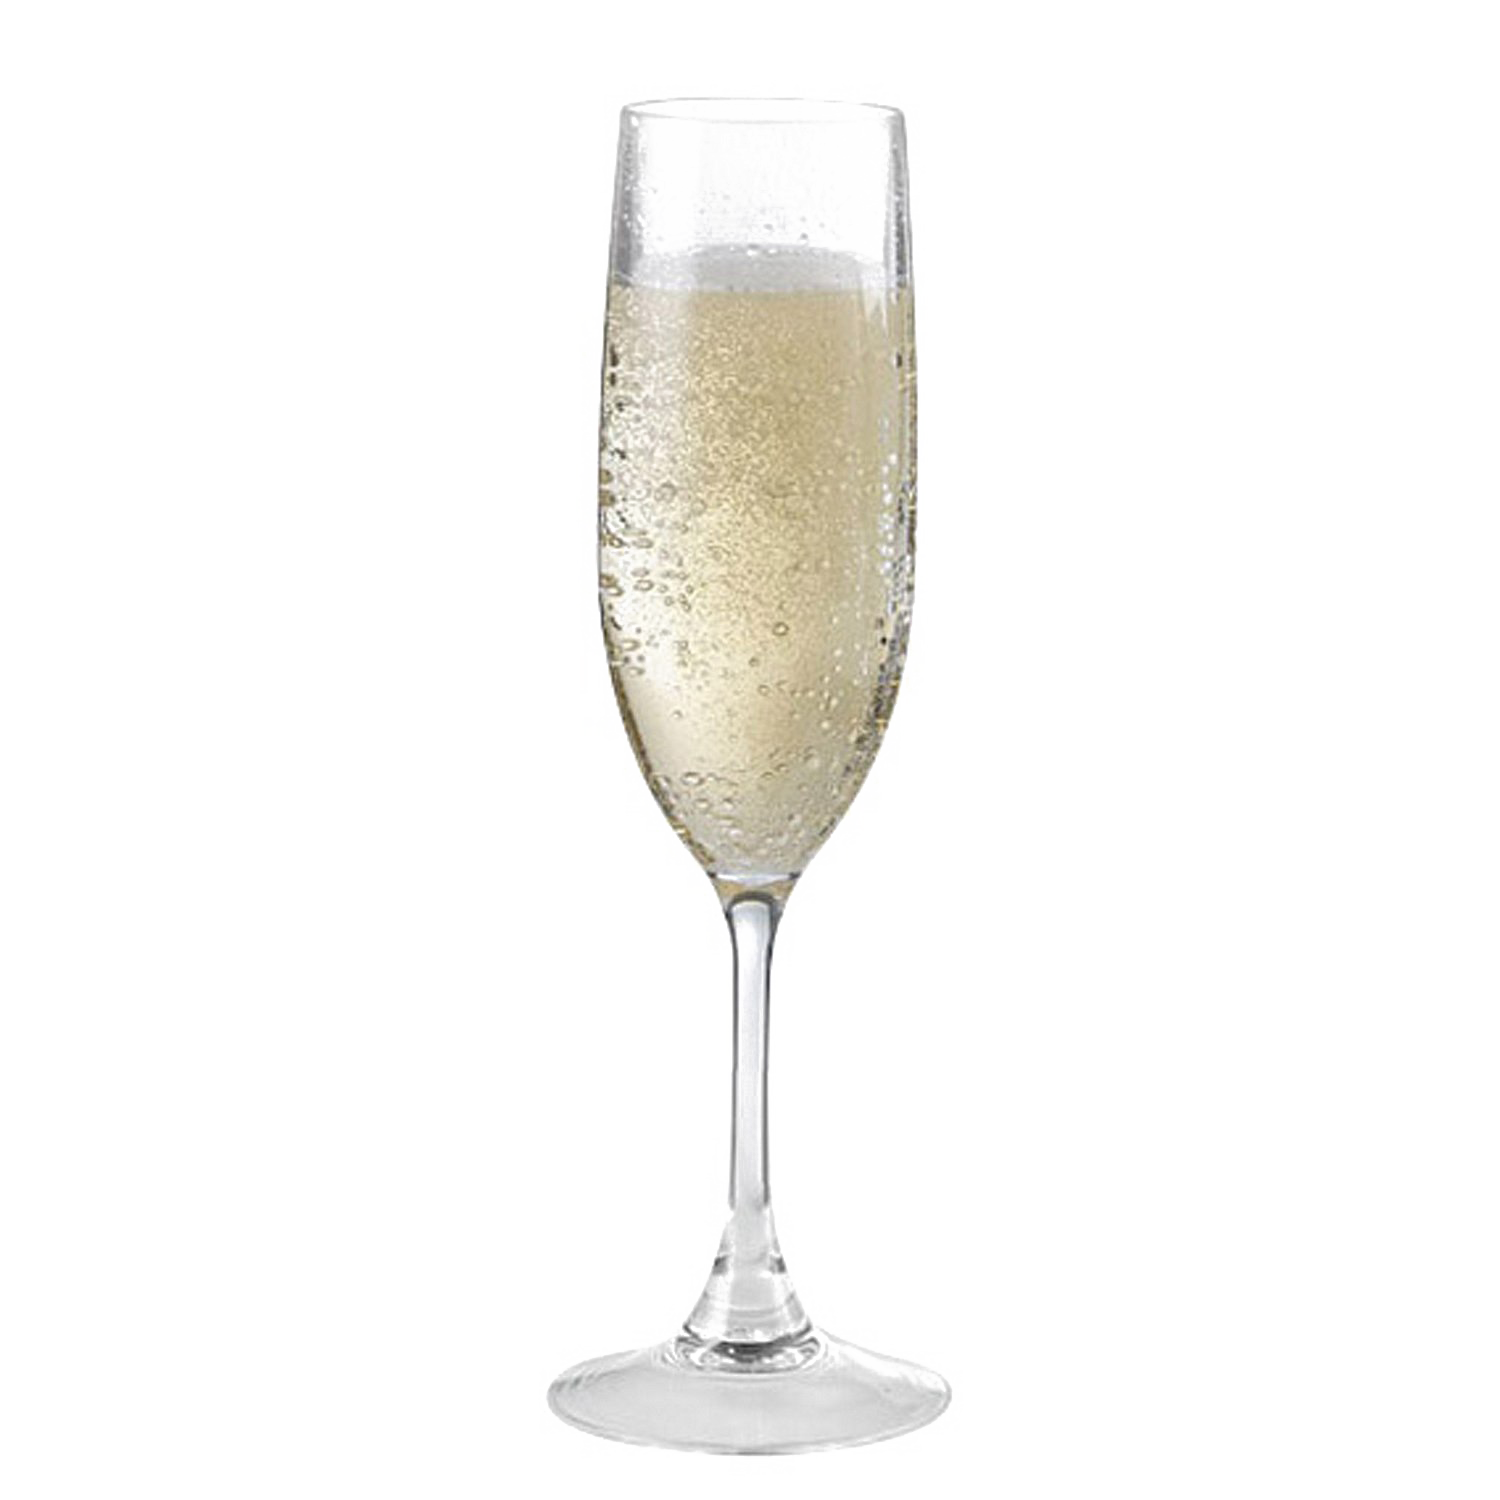 Шампанское стекло PNG Image